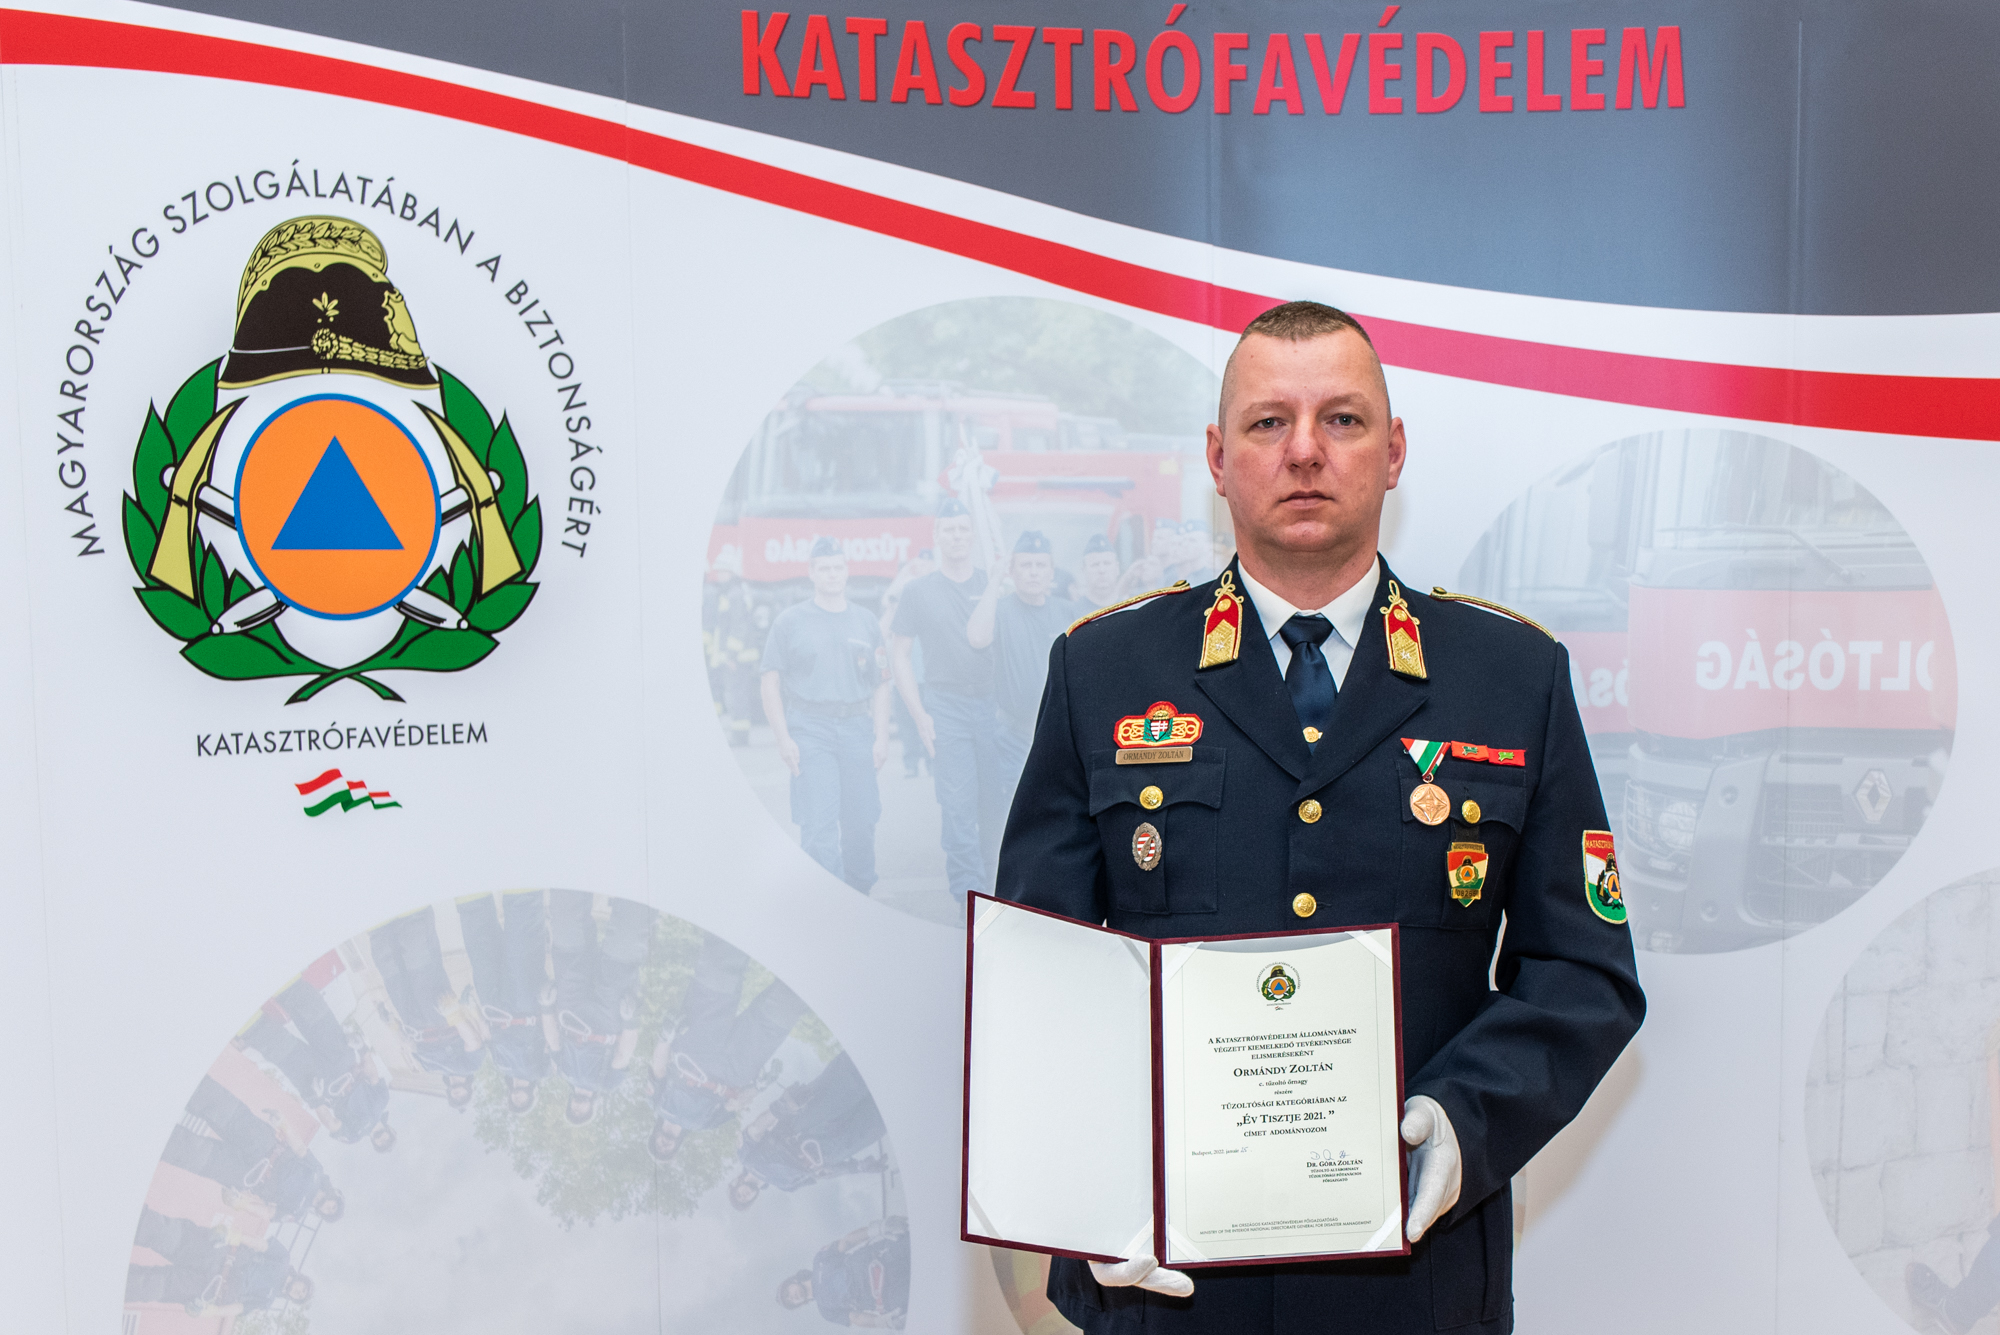 Fehérvári tűzoltó az Év tisztje - Ormándy Zoltán tűzoltó őrnagyot díjazták